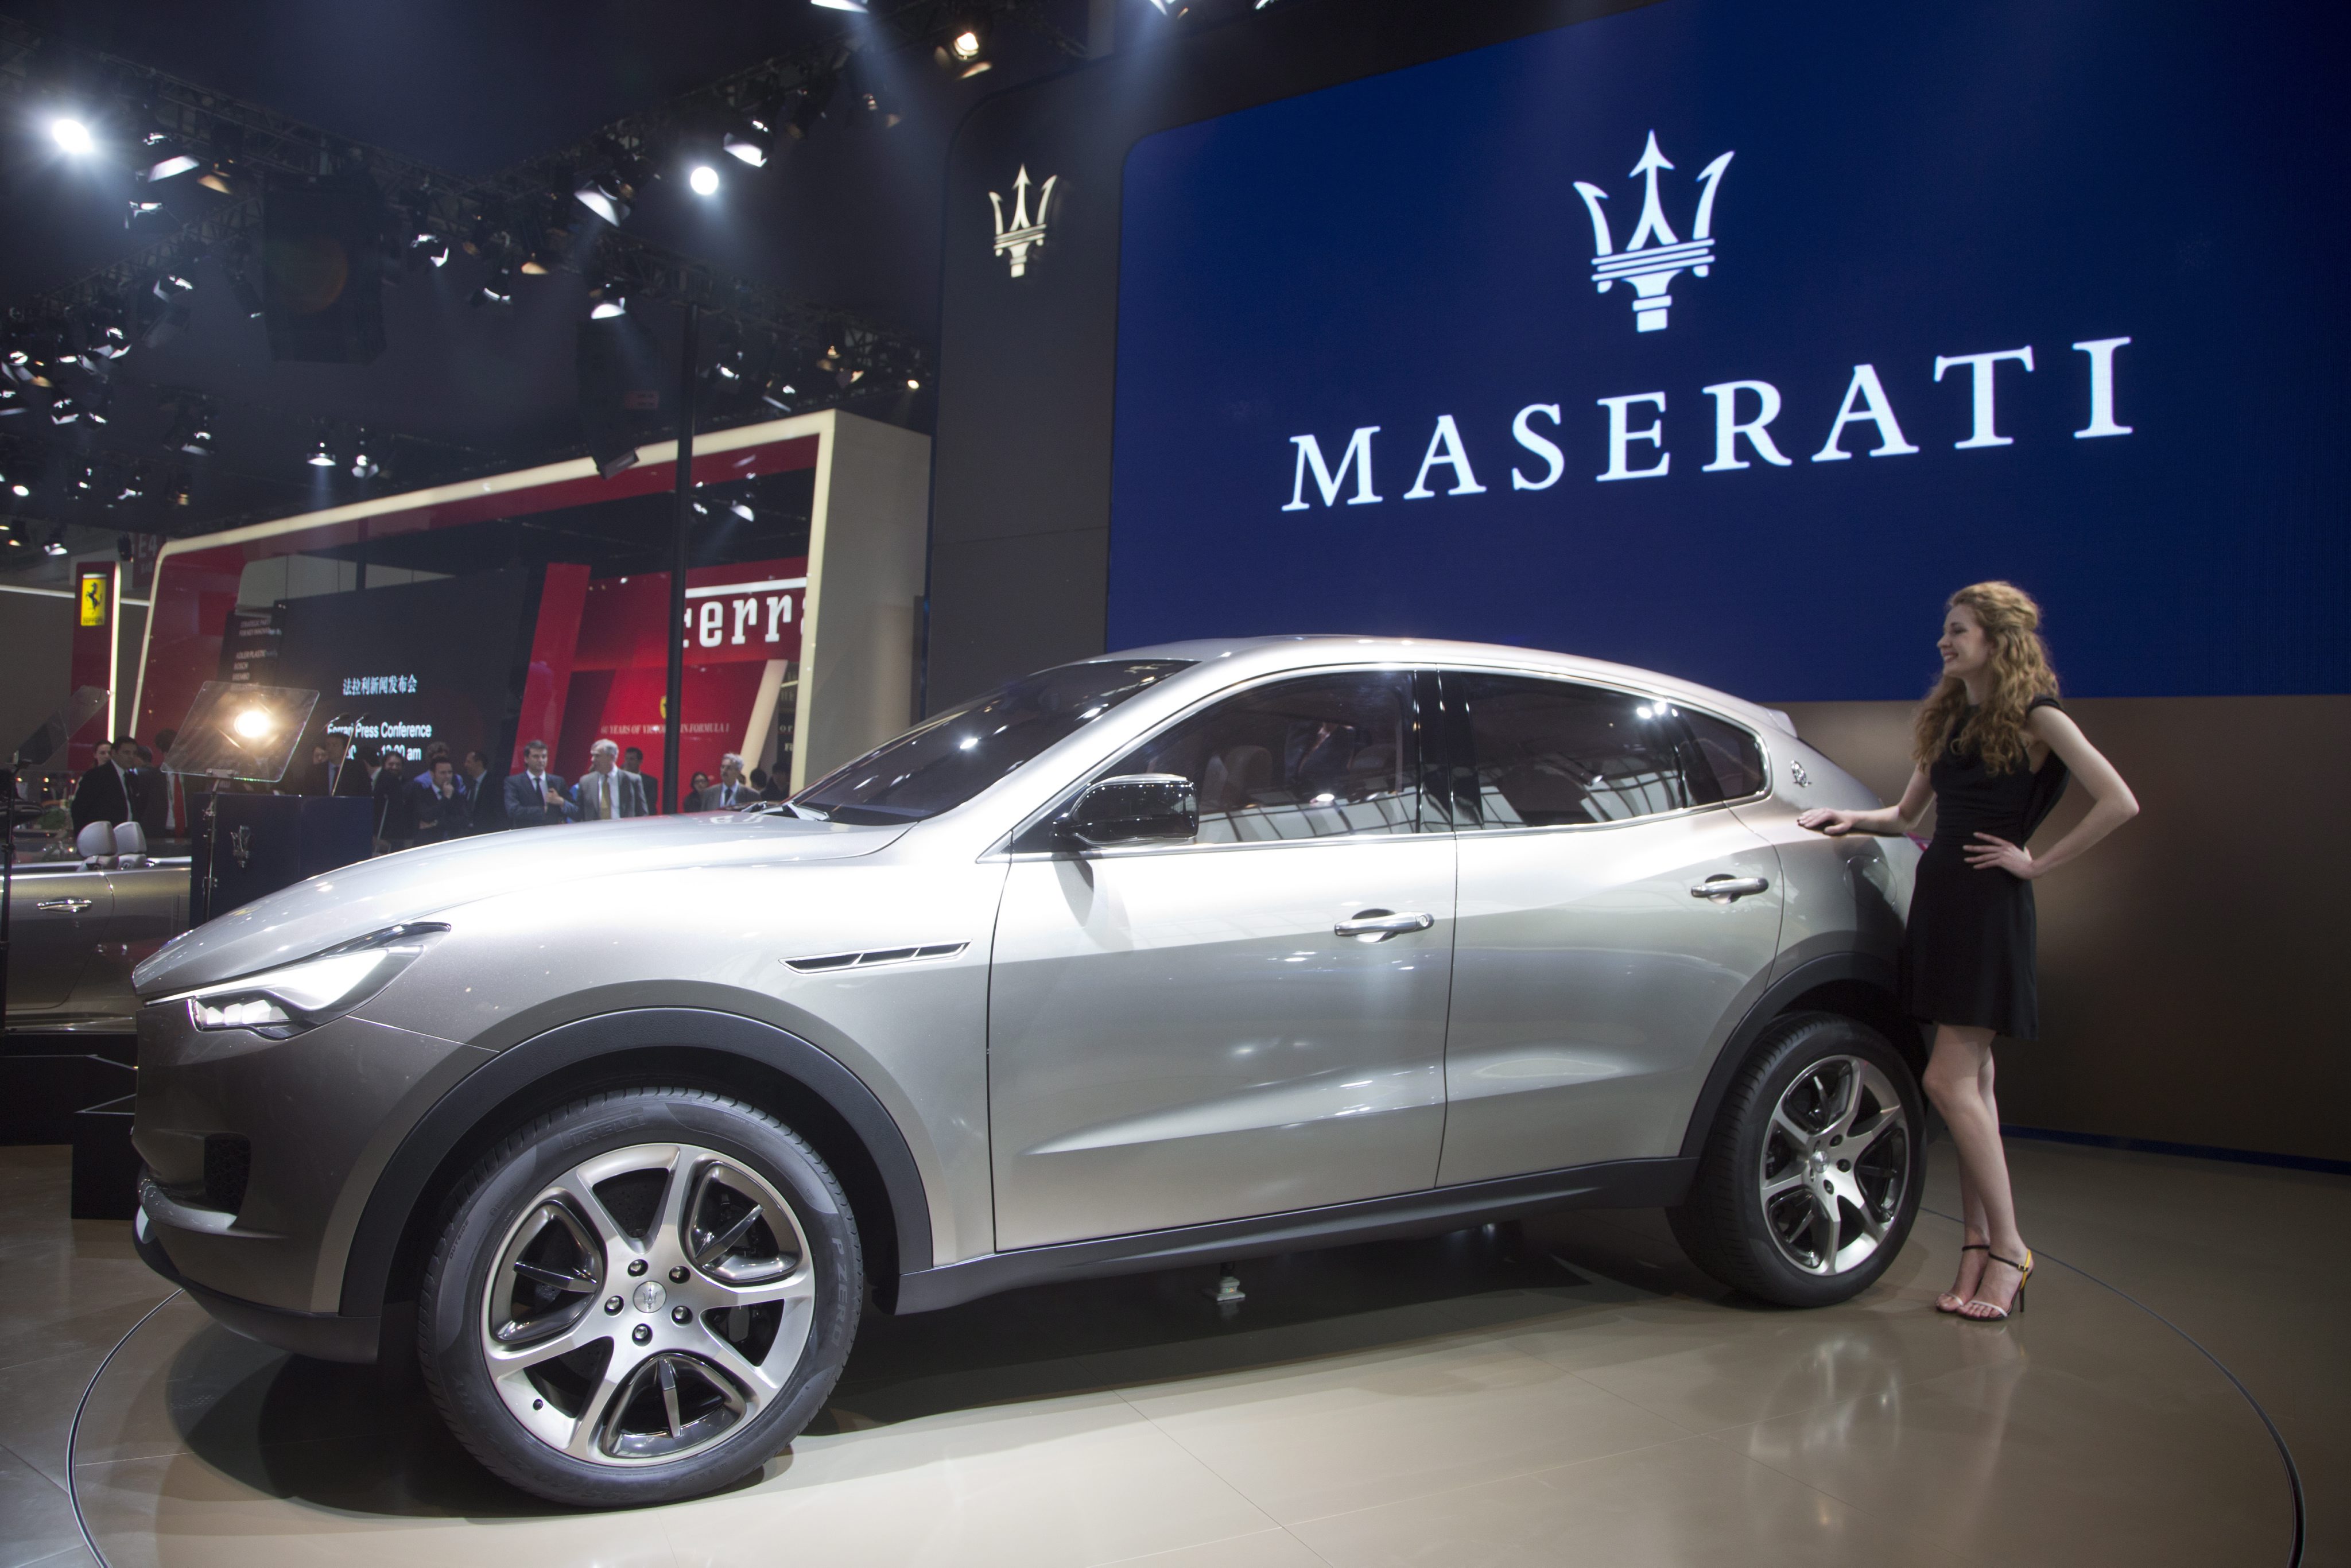 Първият SUV на Maserati e запазен за италианския премиер